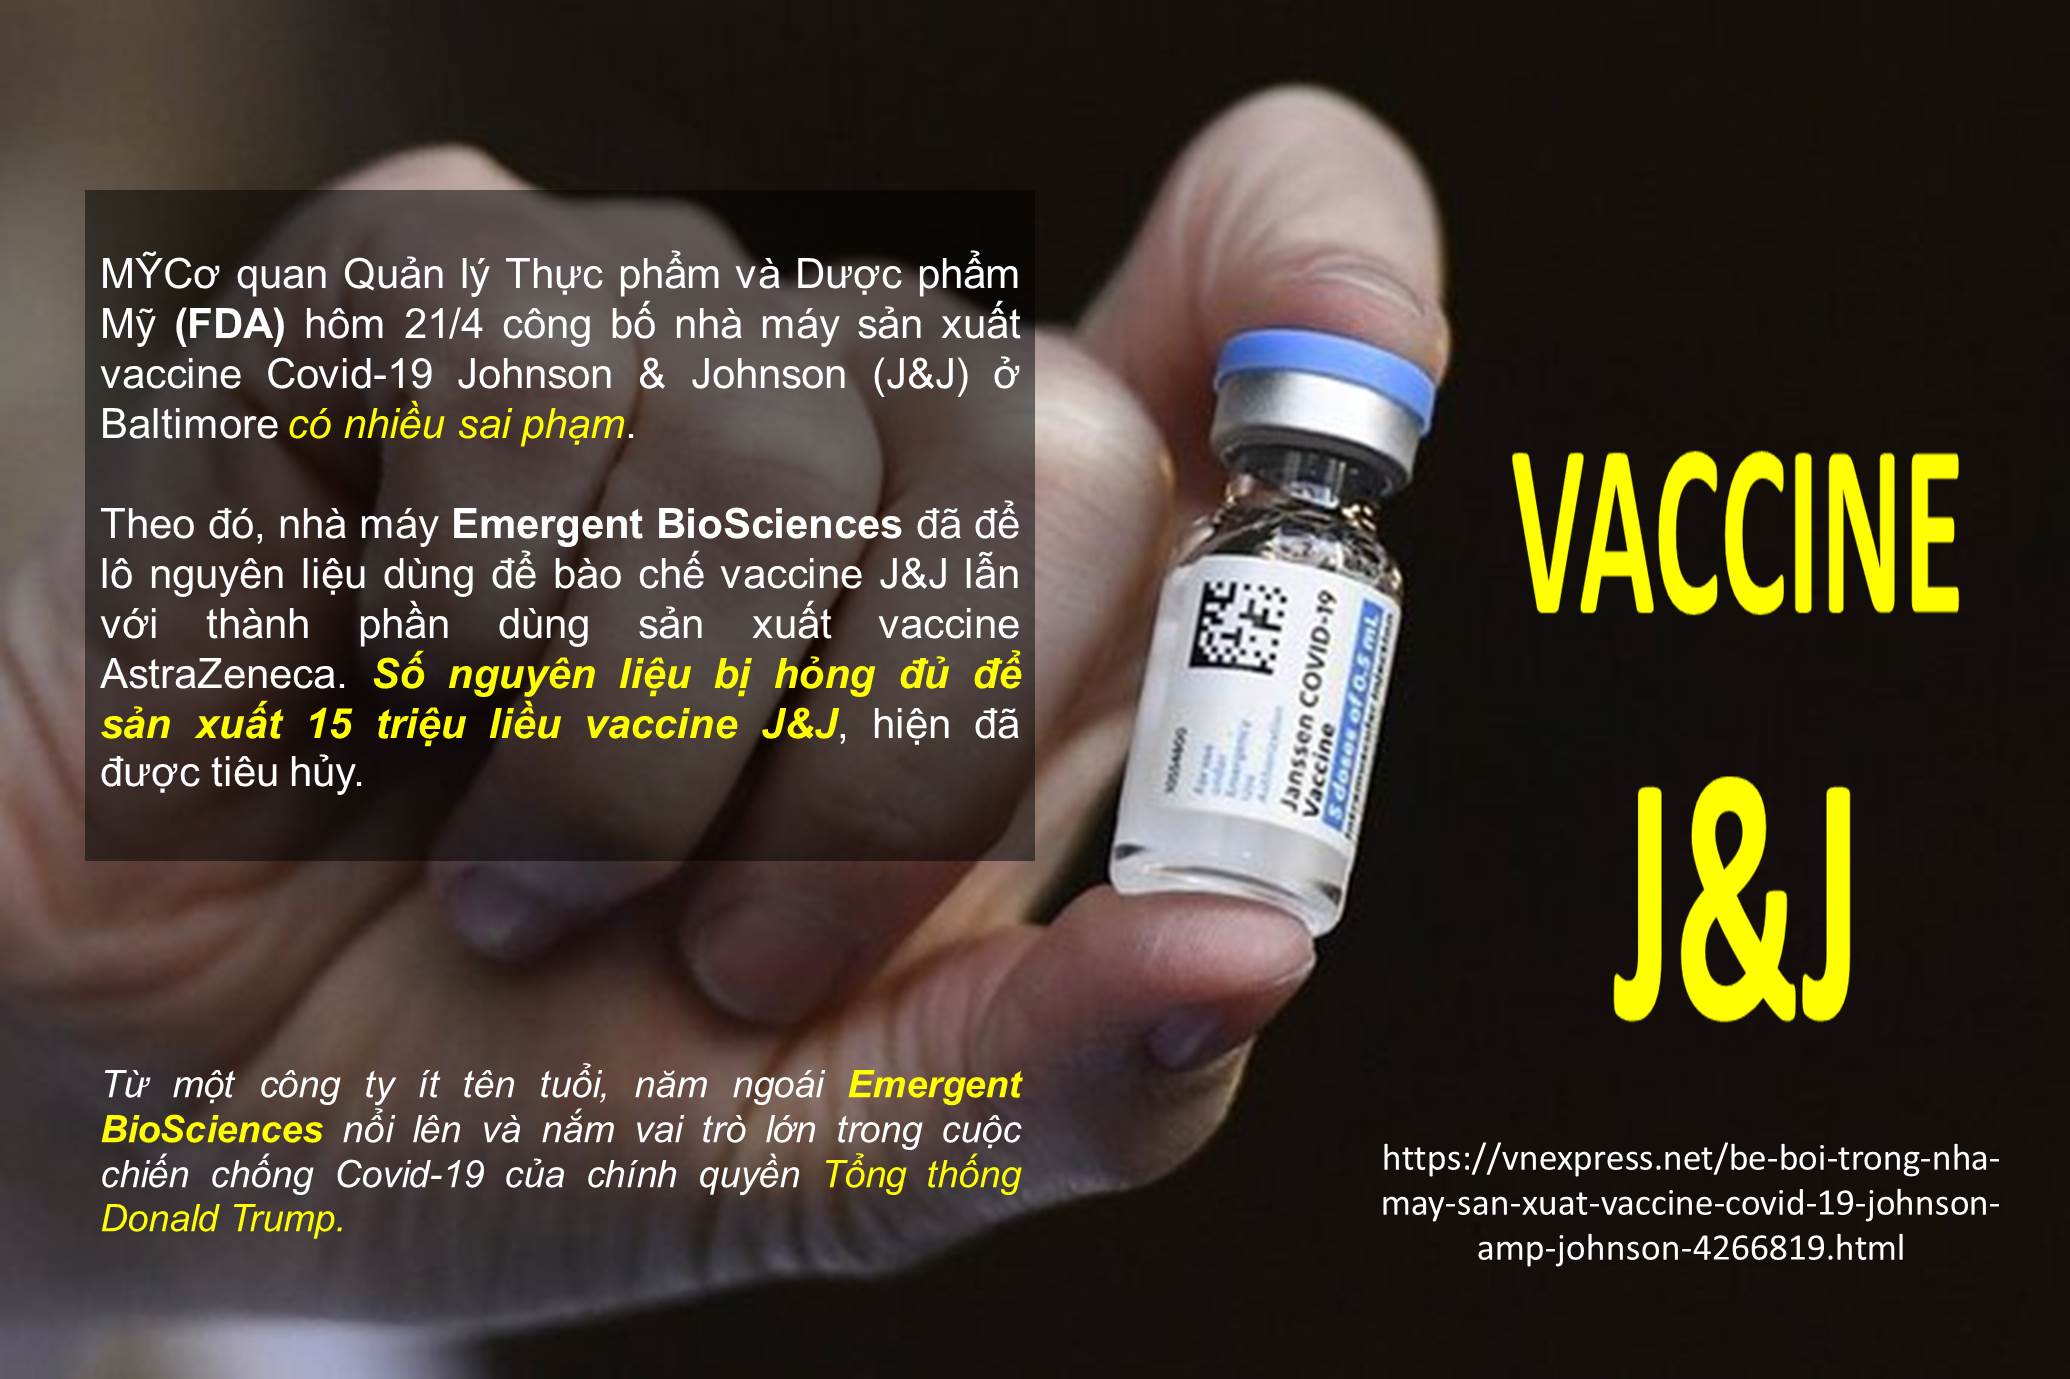 Bê bối trong nhà máy sản xuất vaccine Covid-19 Johnson & Johnson